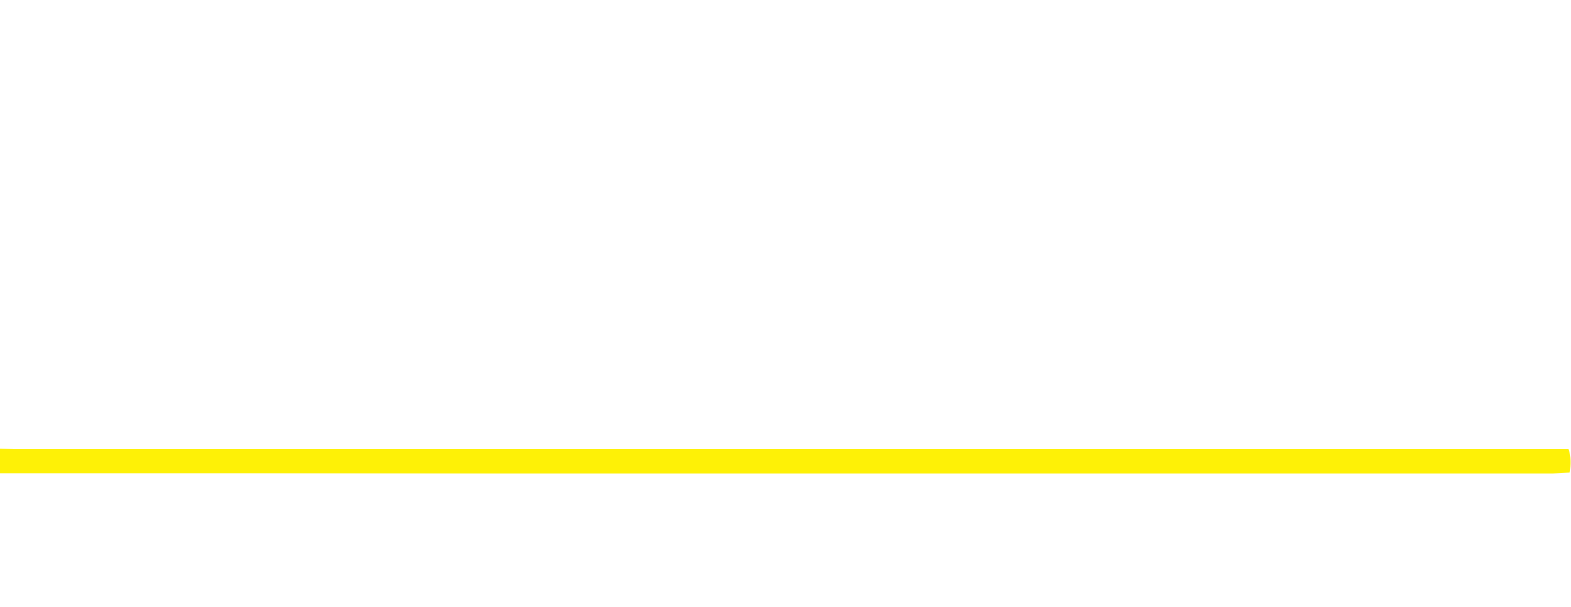 Wheeler Real Estate Investment Trust logo large for dark backgrounds (transparent PNG)